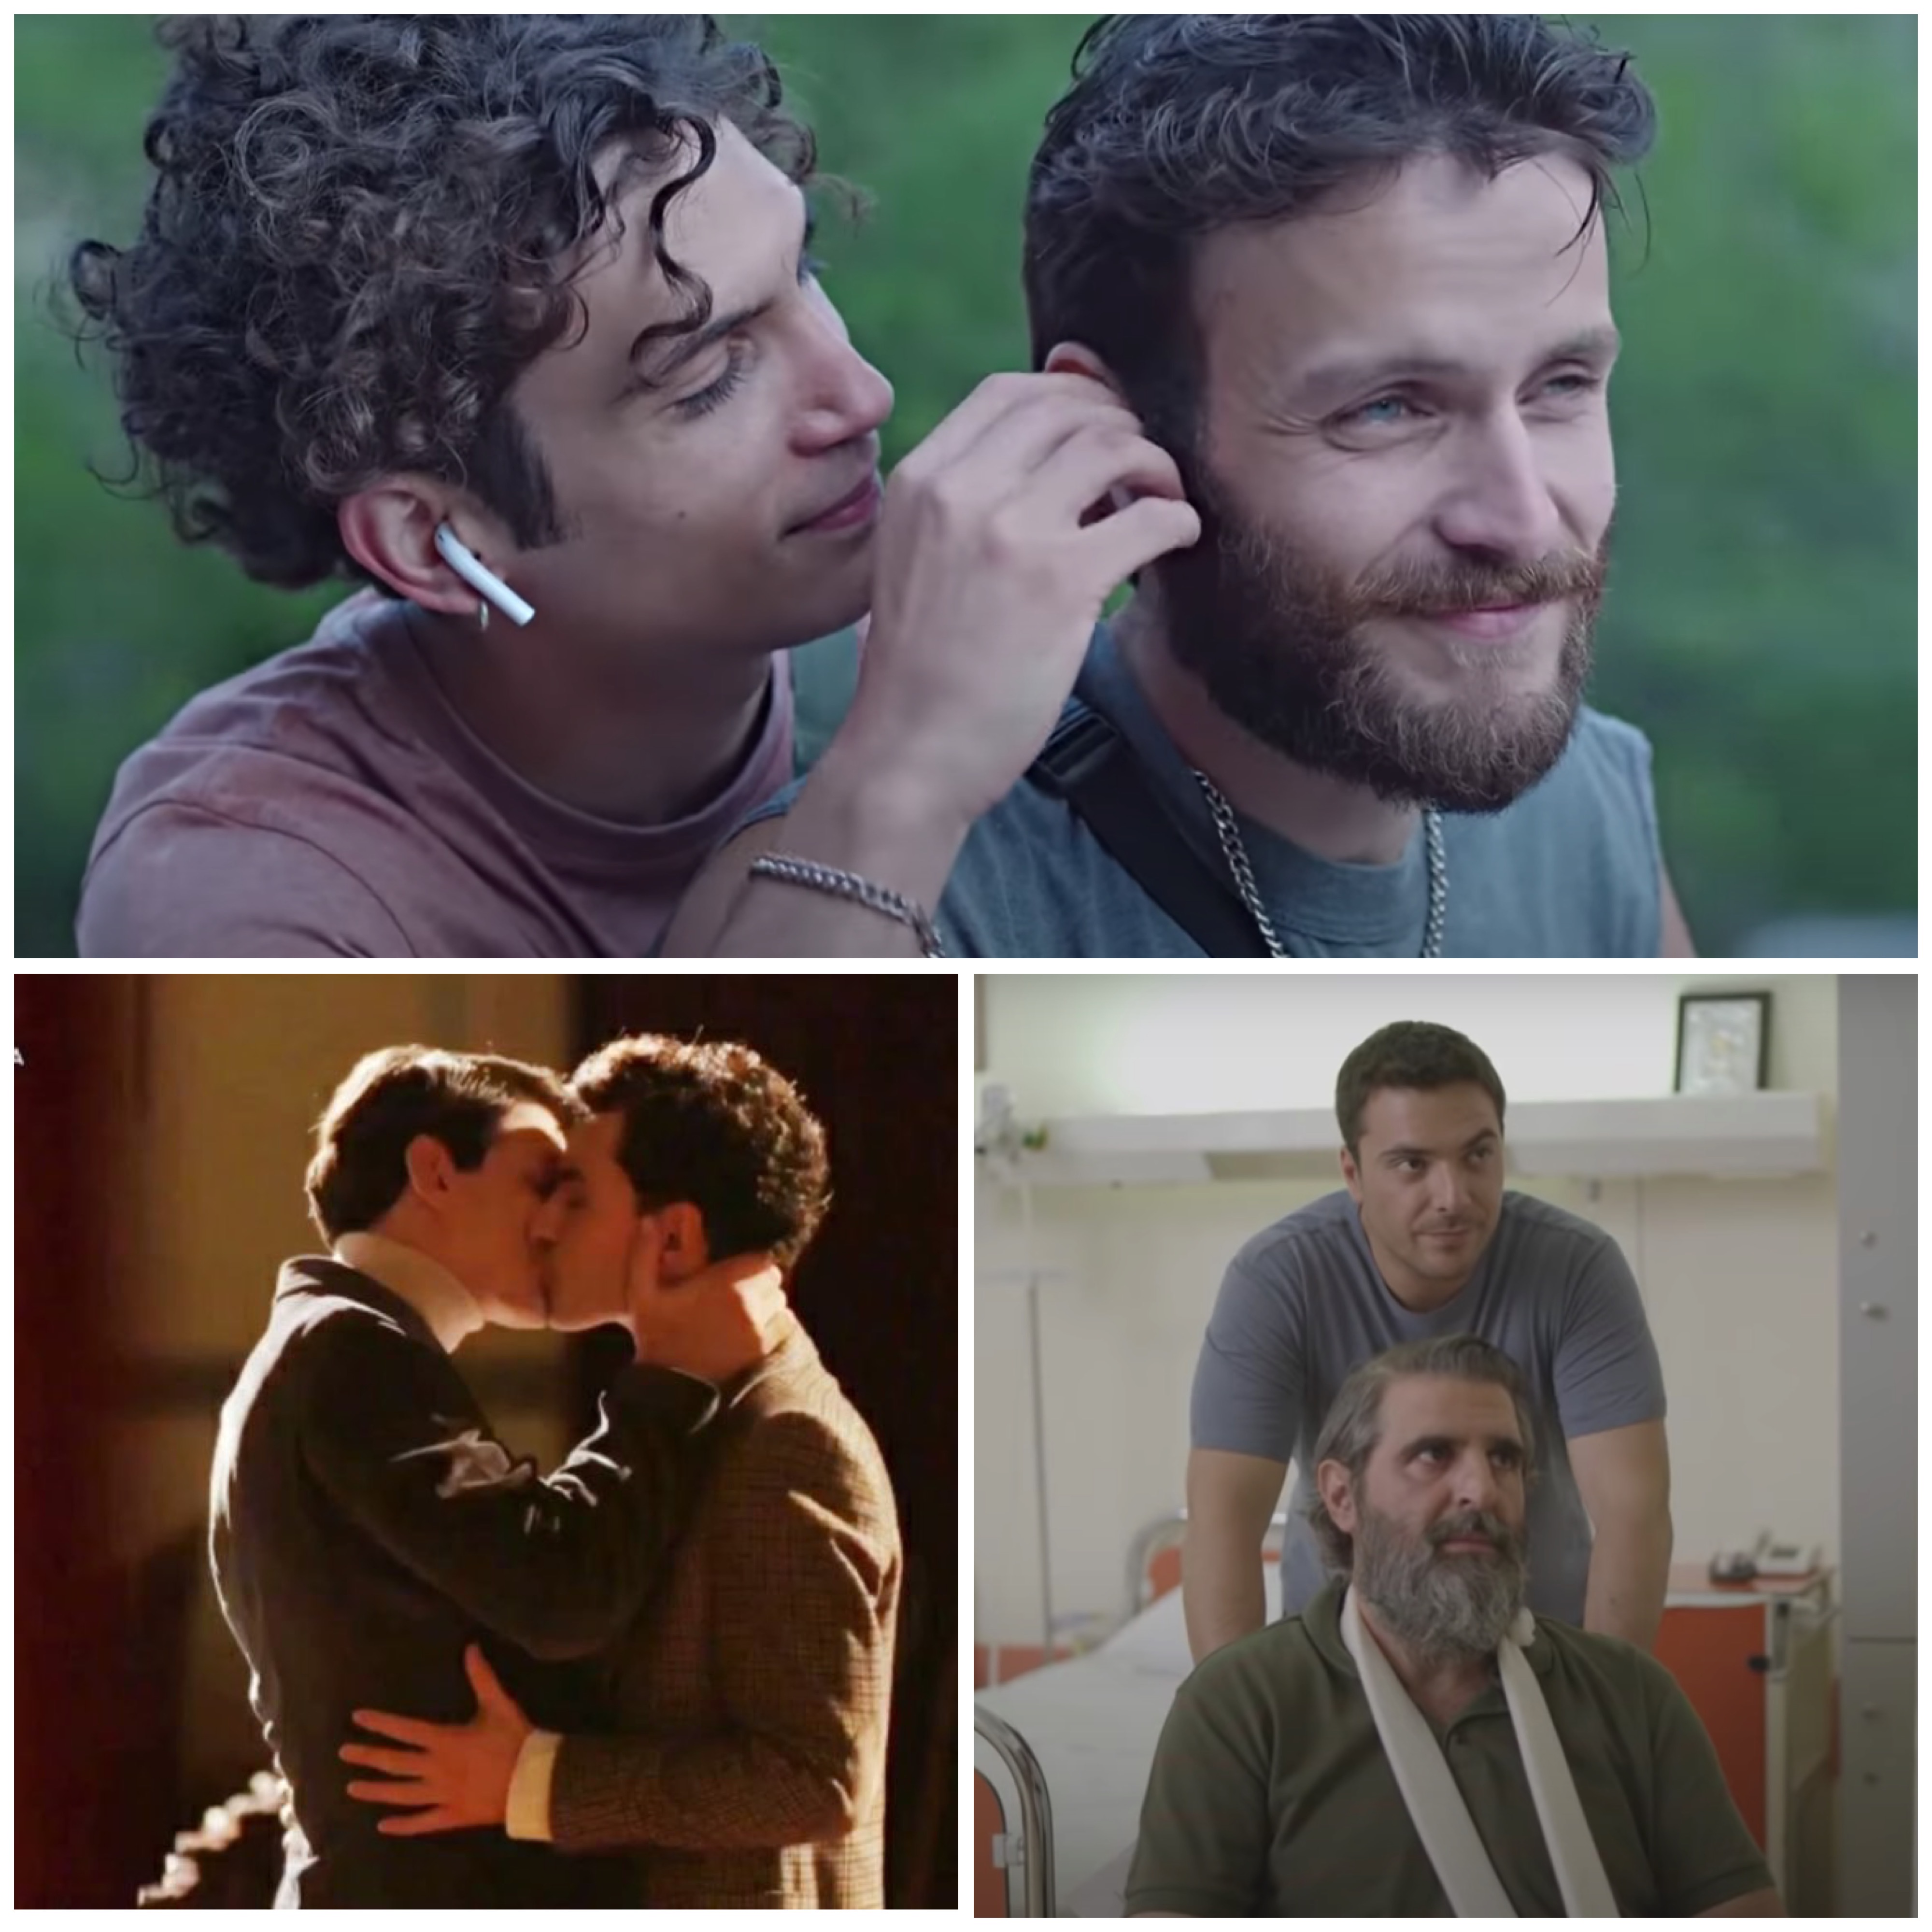 Οι 3 πιο πρόσφατες σημαντικές στιγμές ΛΟΑΤΚΙ+ εκπροσώπησης στην ελληνική τηλεόραση